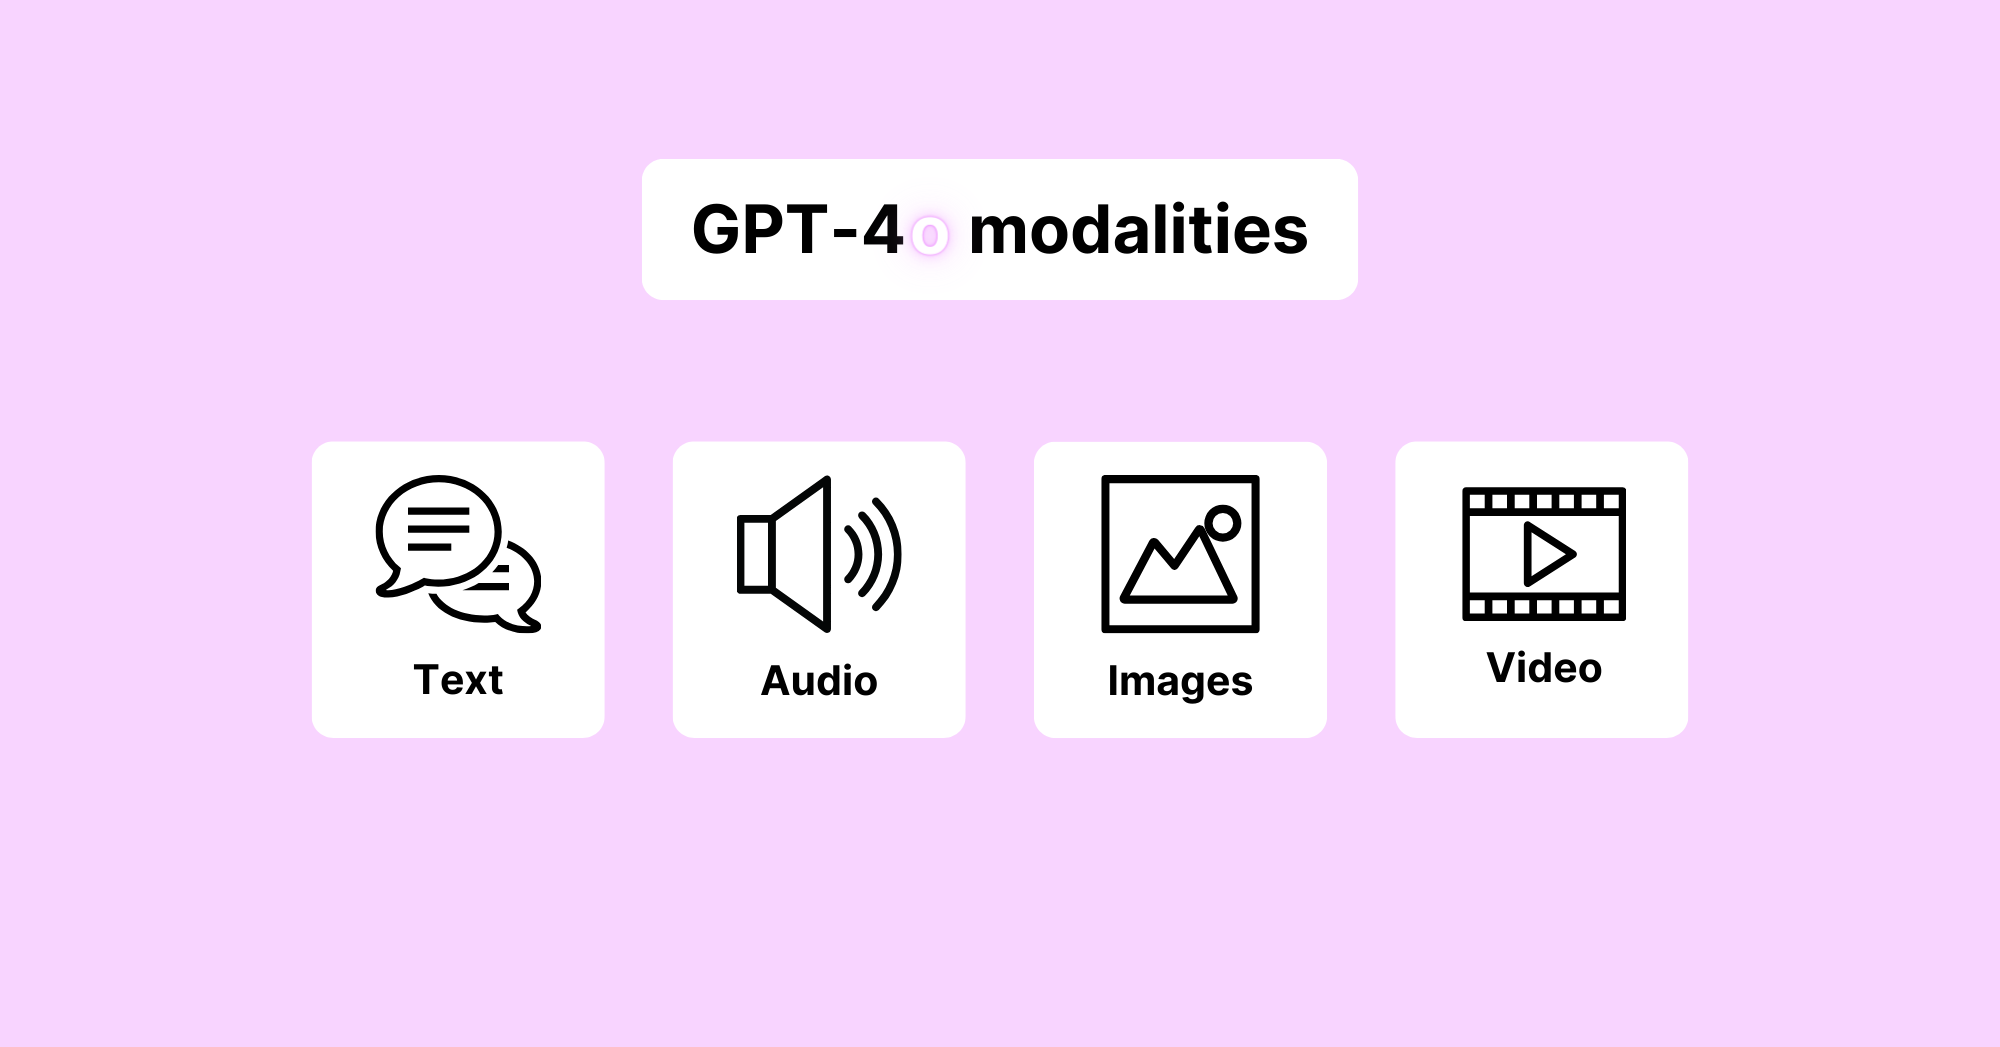 GPT-4o summary of capabilities